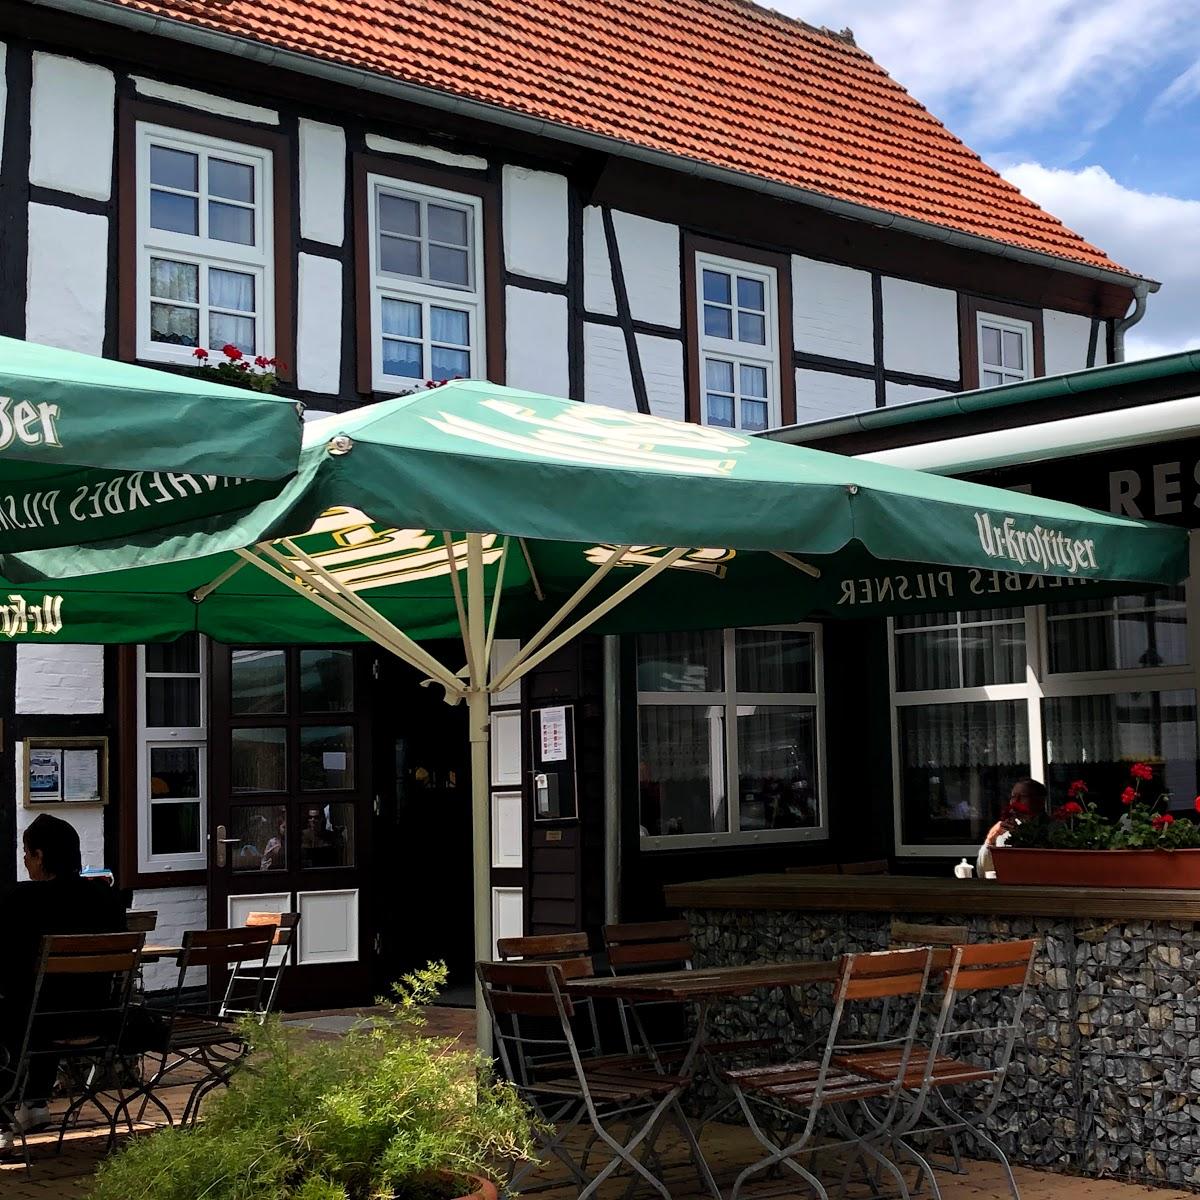 Restaurant "Gartenhaus Cafe Restaurant" in Falkenstein-Harz